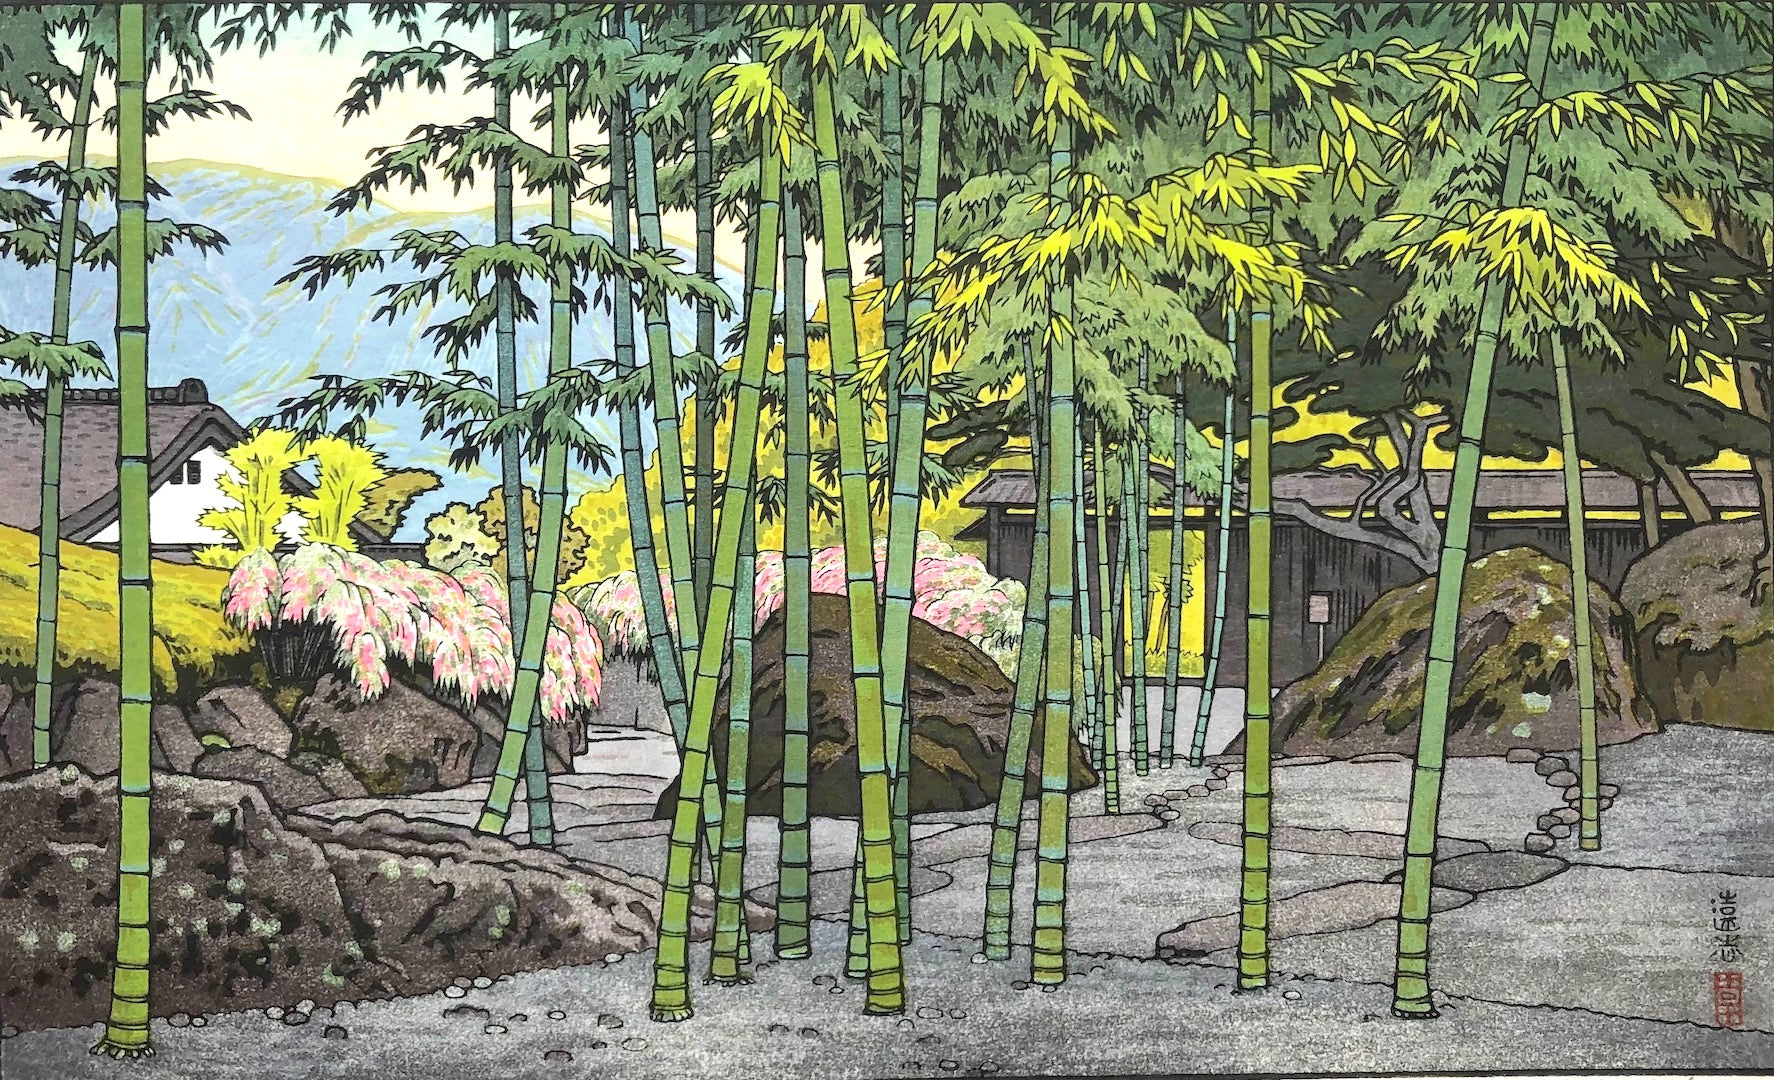 吉田遠志 (Yoshida Toshi)木版画 015402 箱根神仙郷 竹のお庭 Bamboo